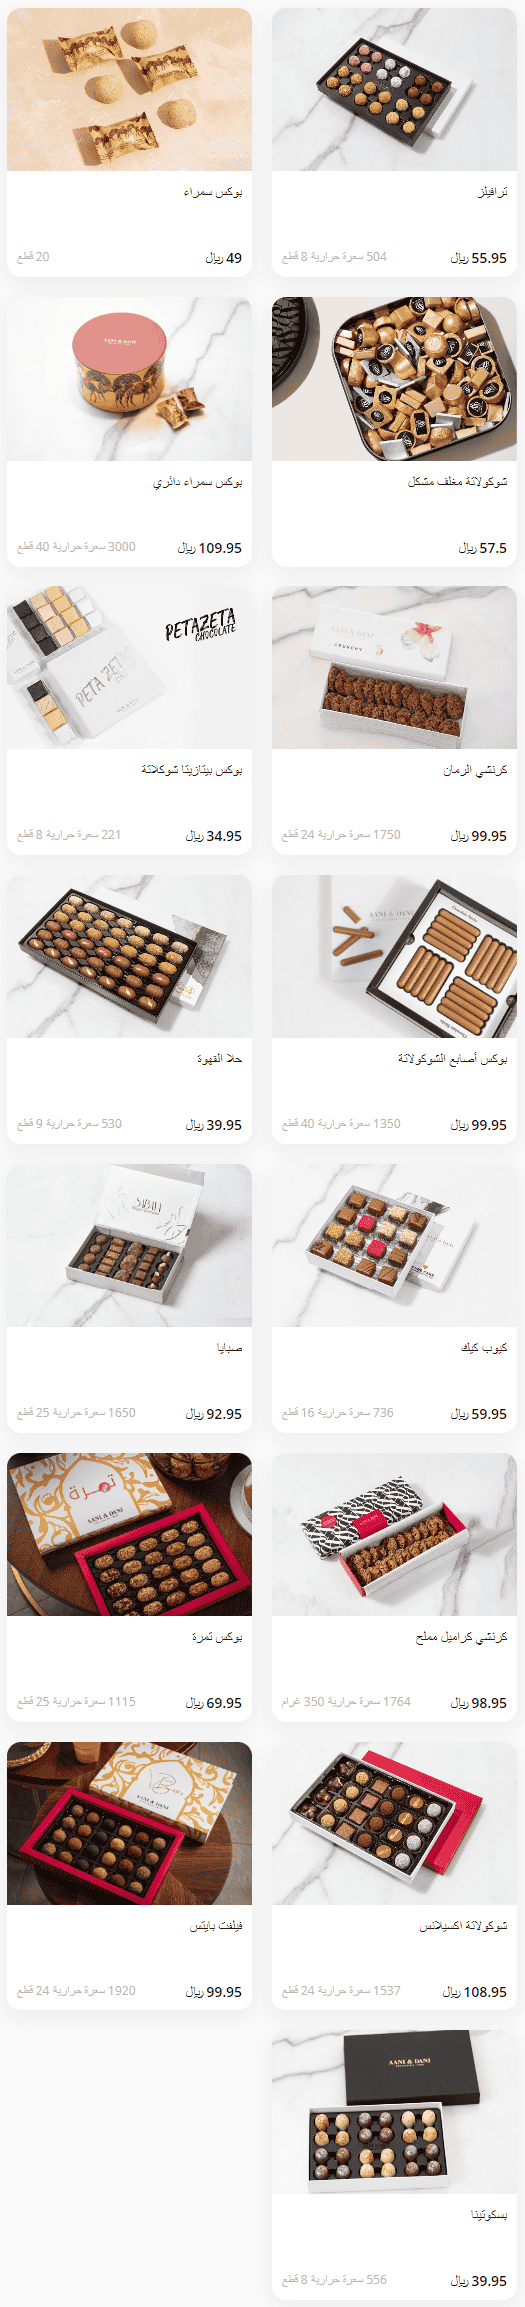 آني وداني الشوكولاتة حلويات آني وداني السعودية | منيو + فروع + اسعار